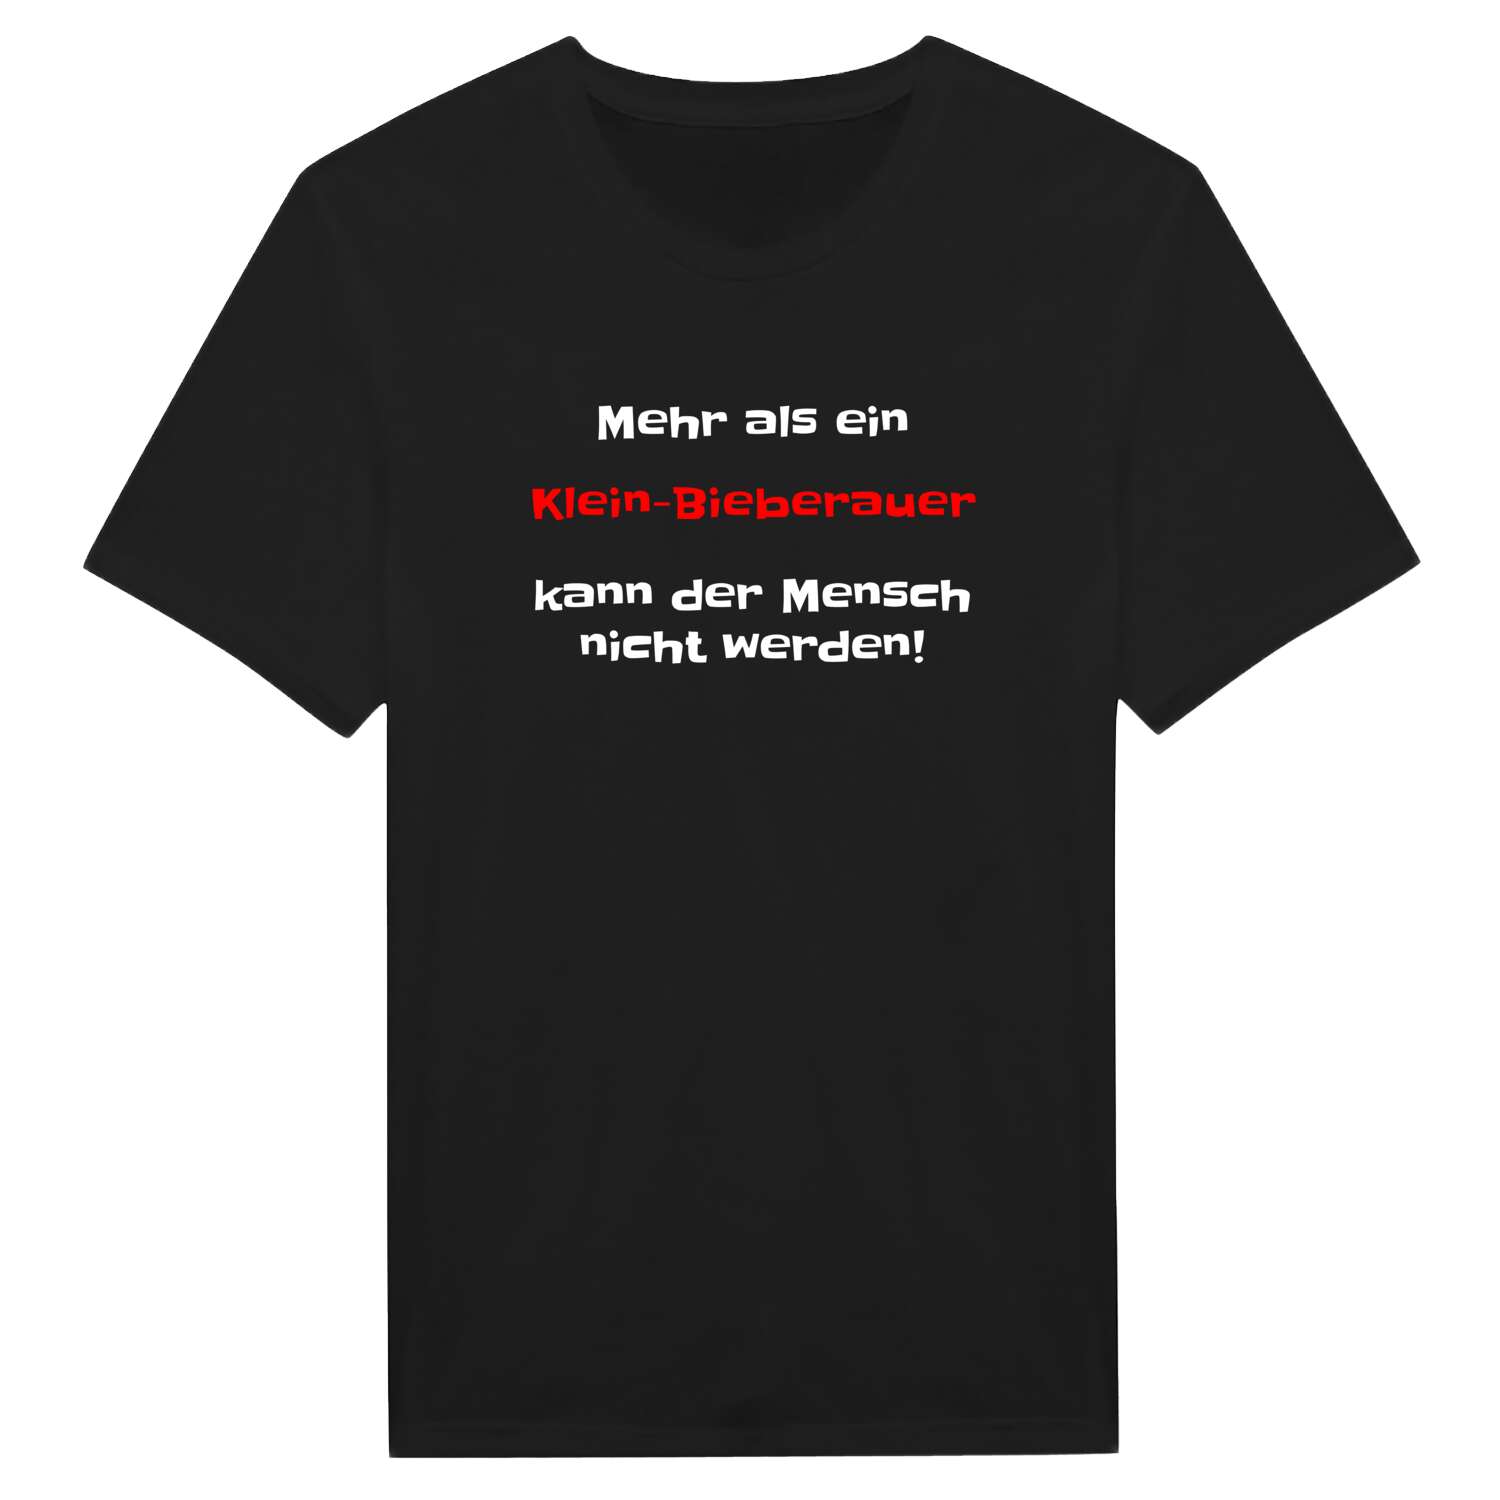 Klein-Bieberau T-Shirt »Mehr als ein«